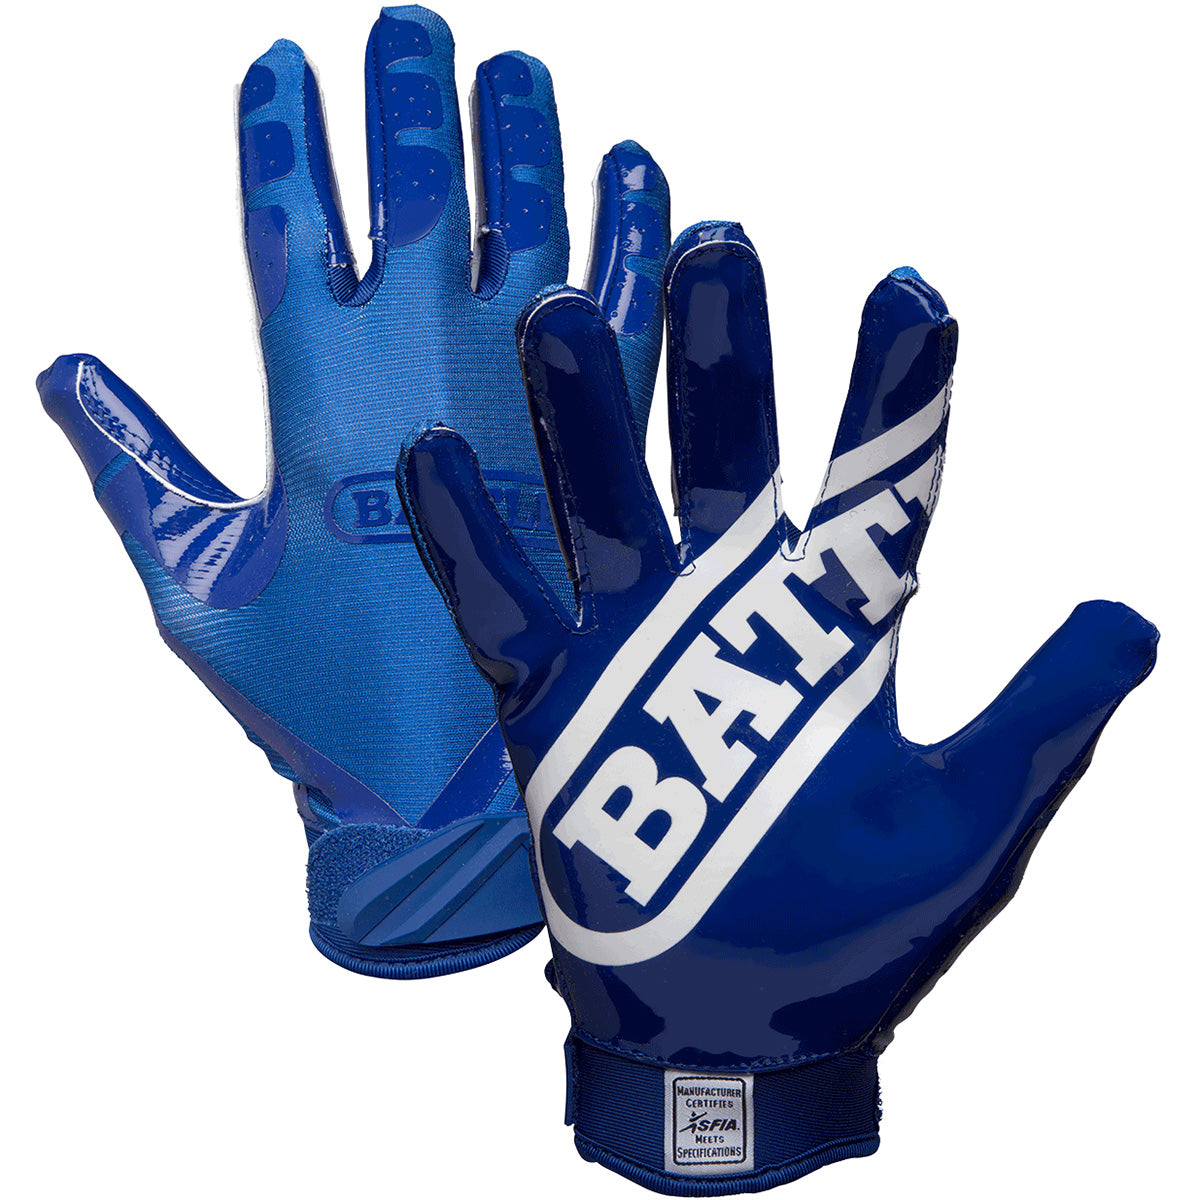 Battle Sports Adult DoubleThreat Football Gloves - Navy/Navy Battle Sports